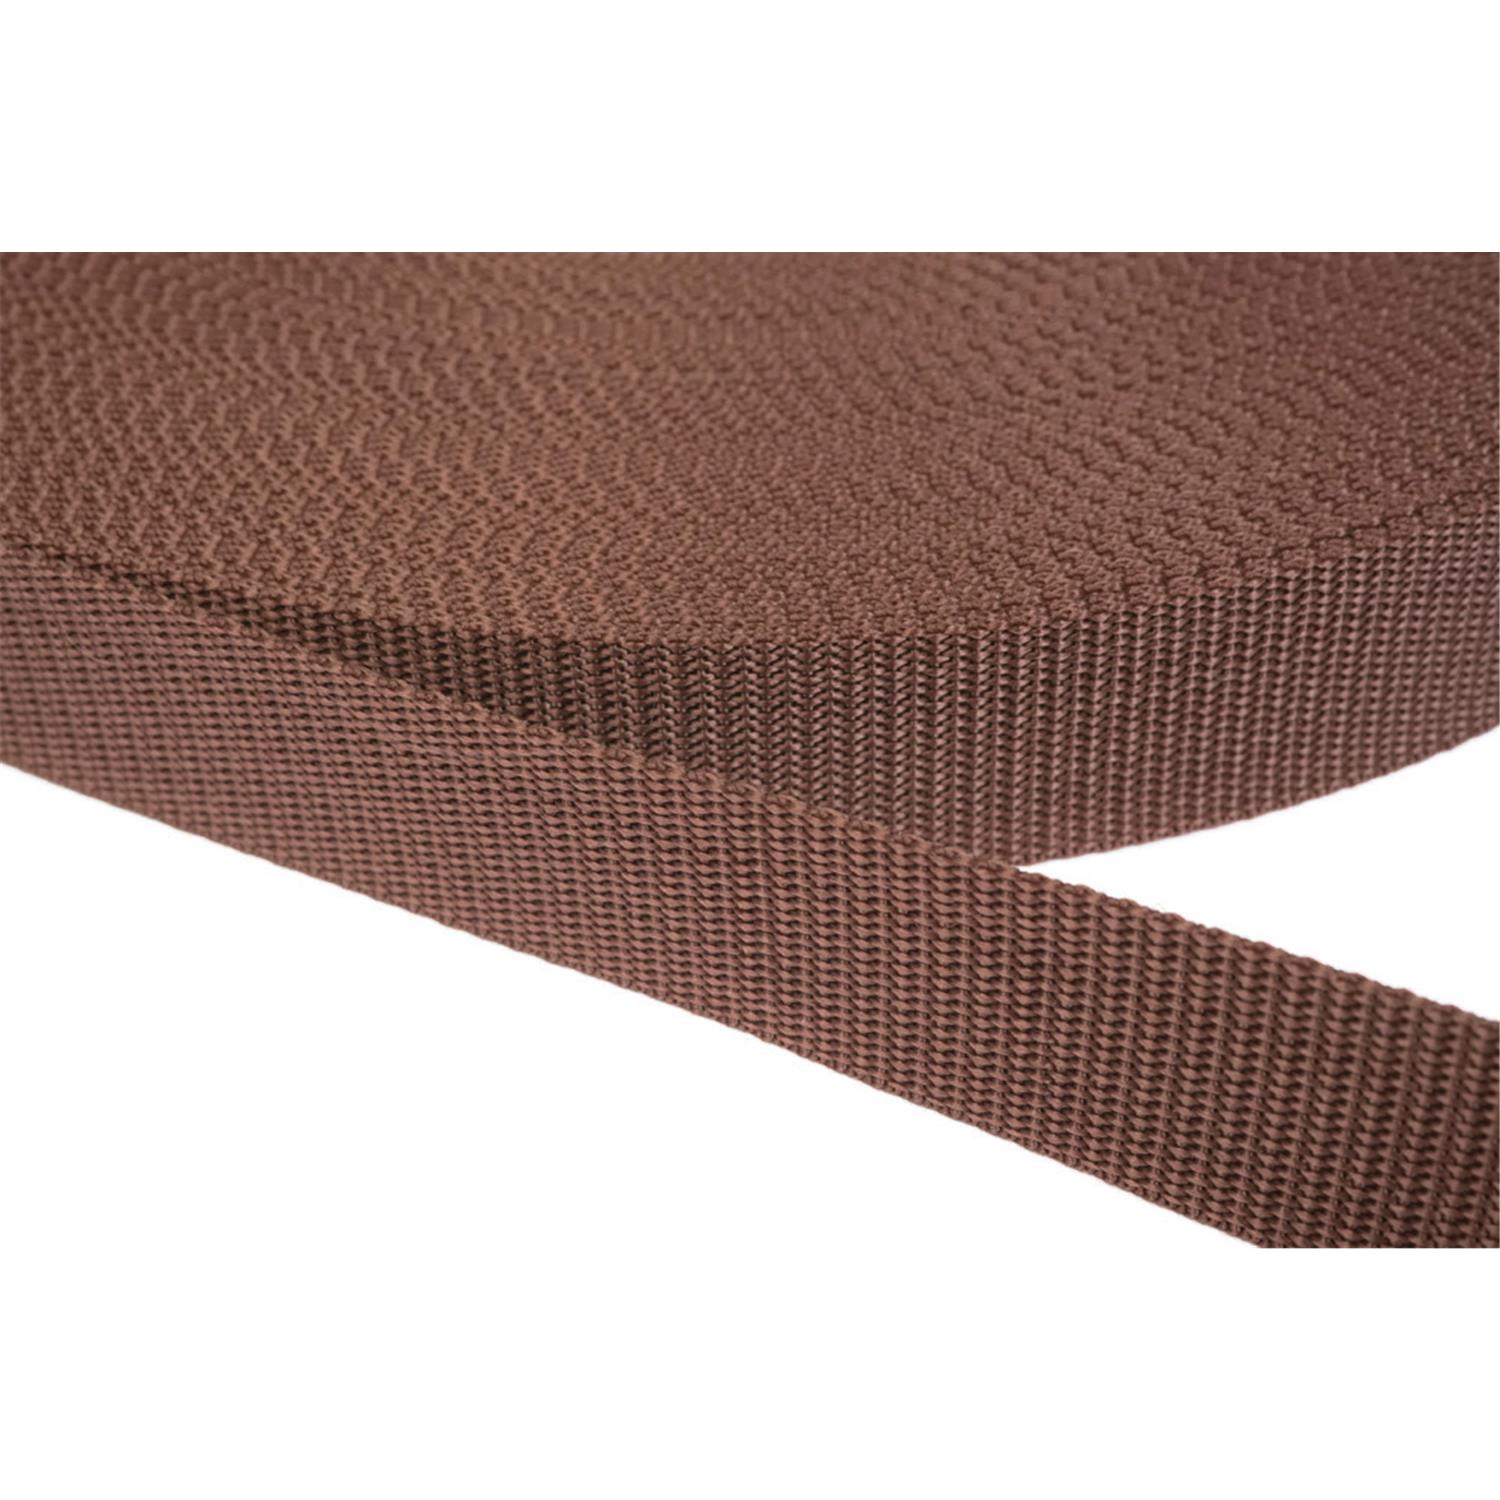 Gurtband 30mm breit aus Polypropylen in 41 Farben 07 - braun 6 Meter